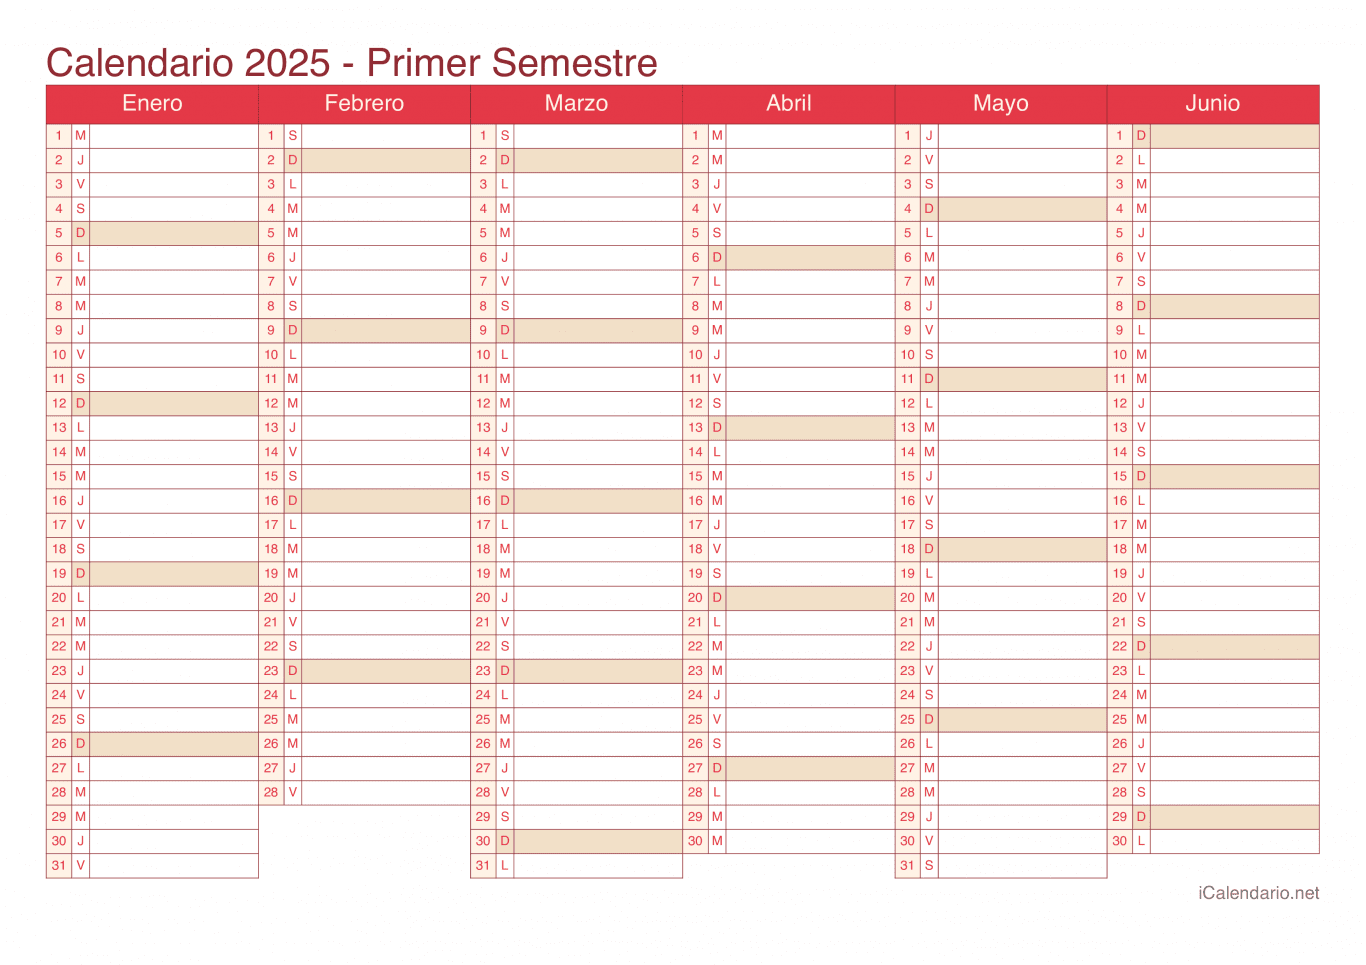 Calendario por semestre 2025 - Cherry